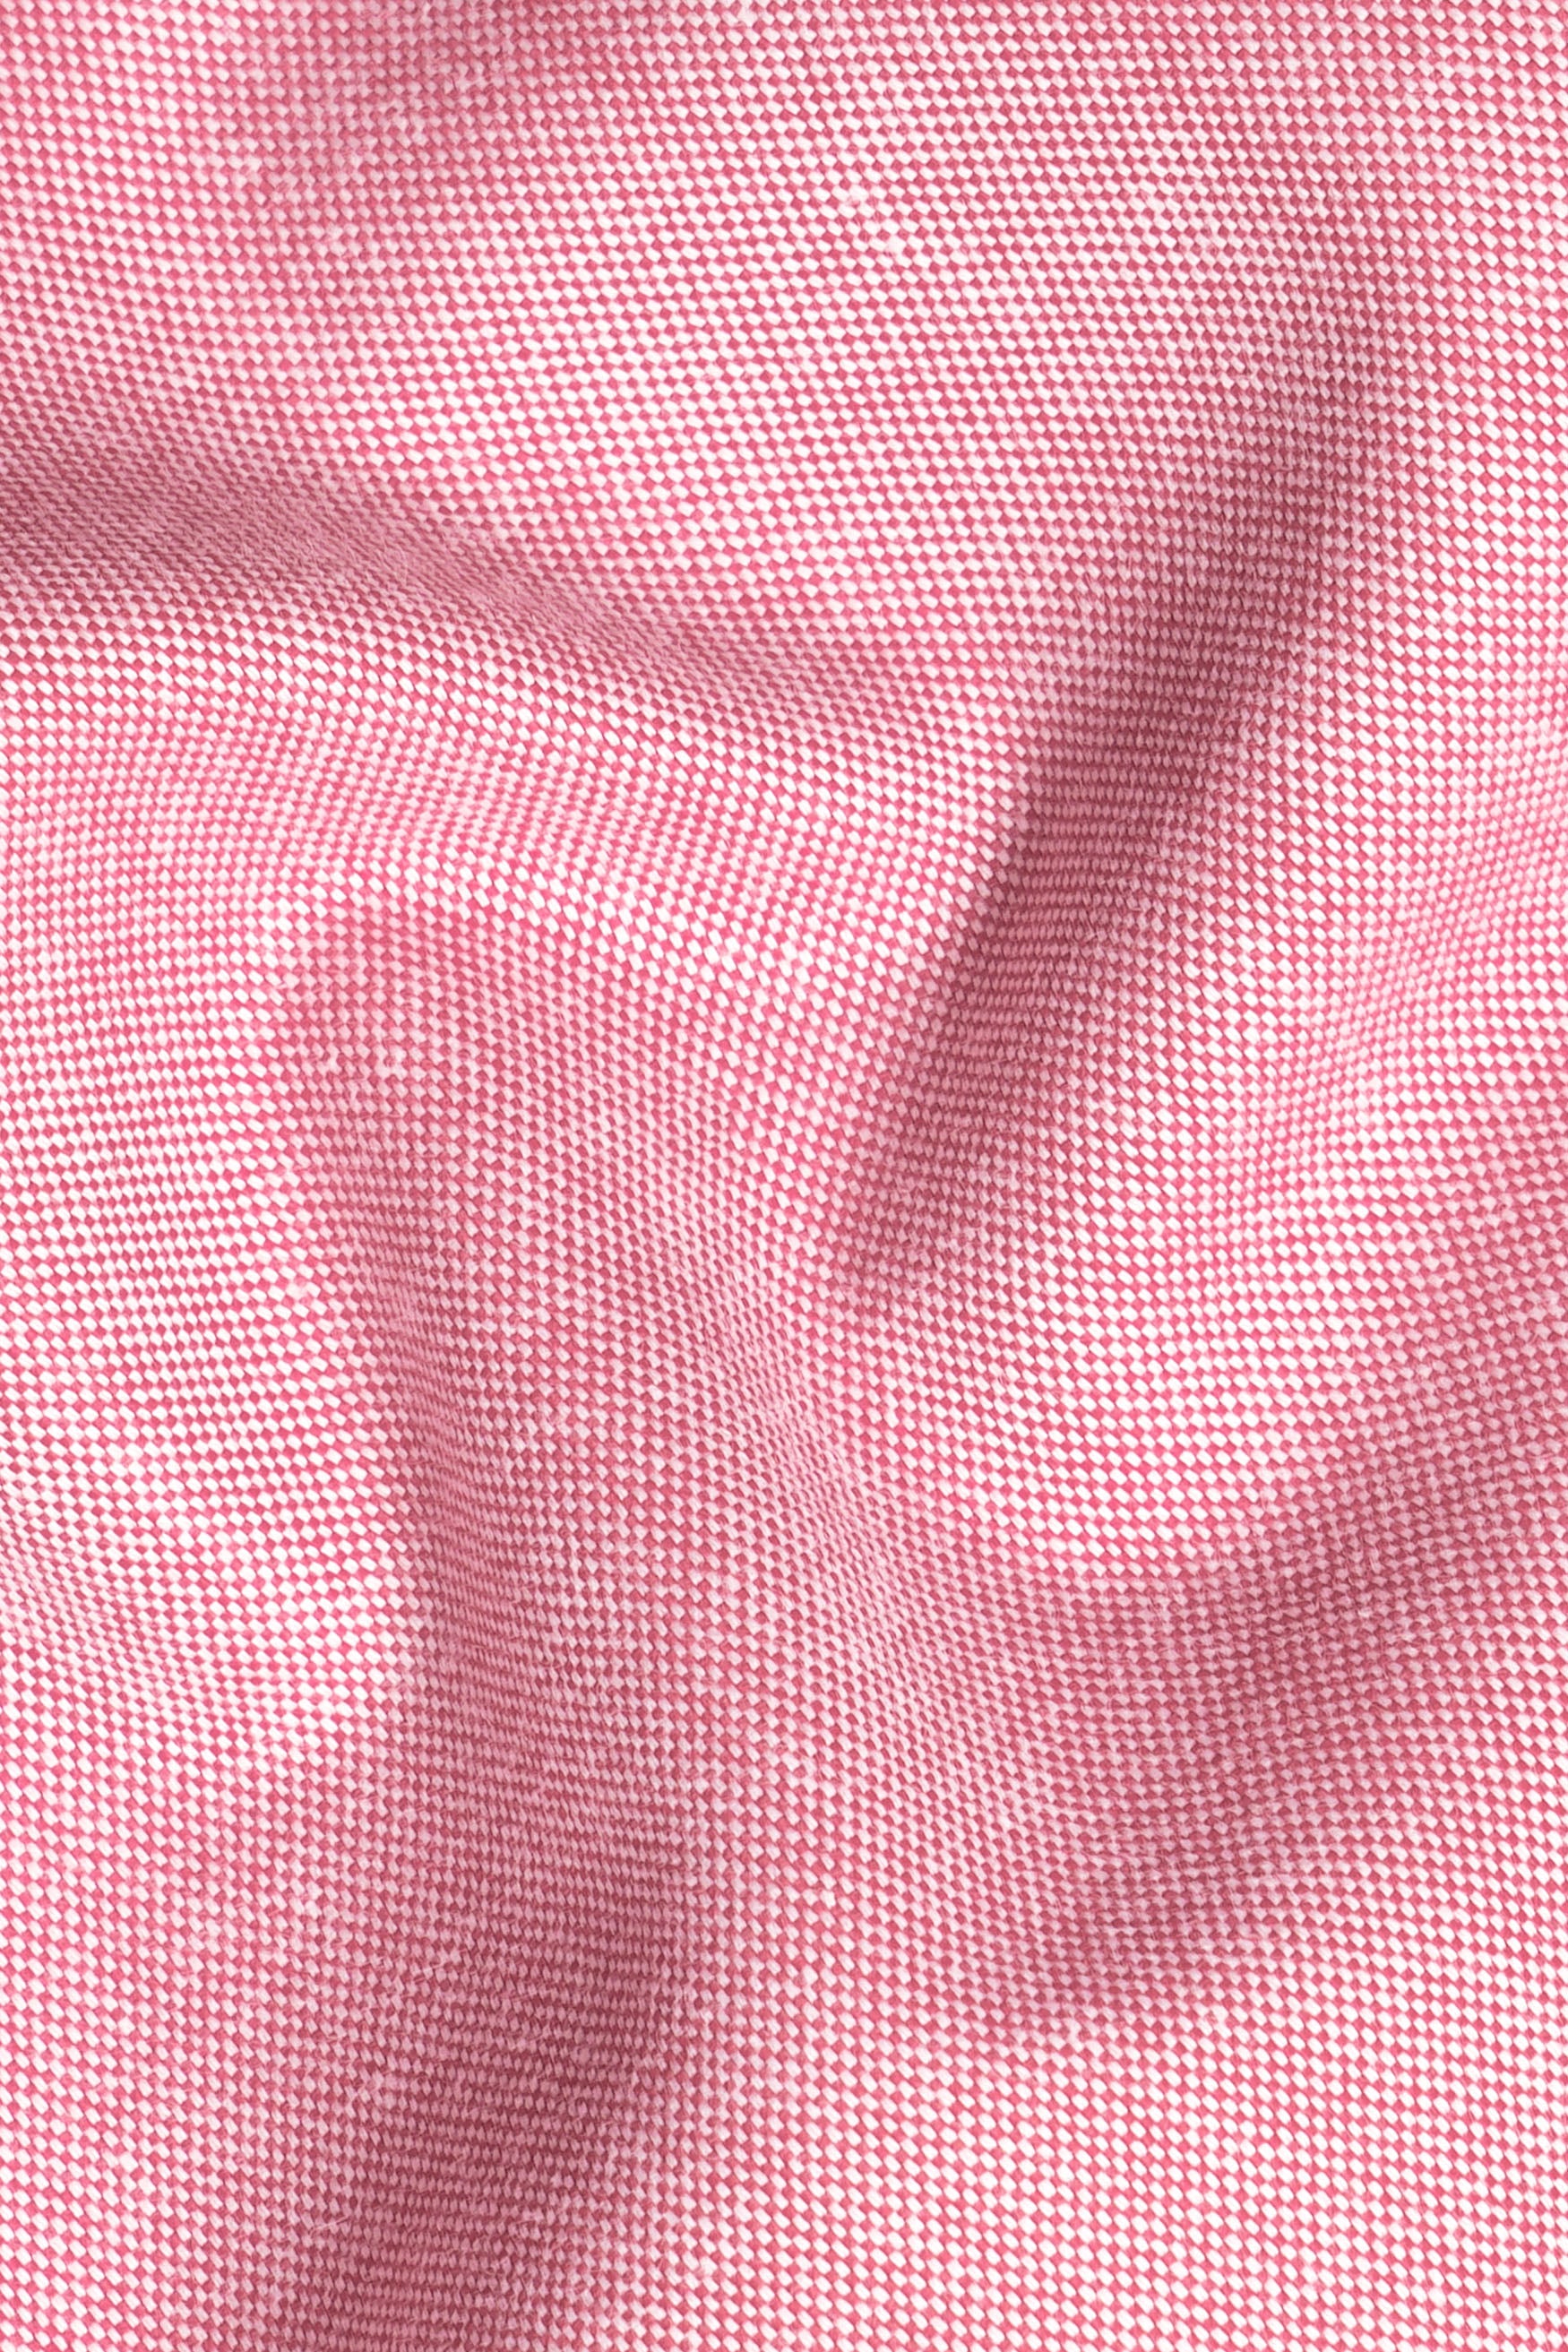 Wewak Pink Royal Oxford Button Down Shirt